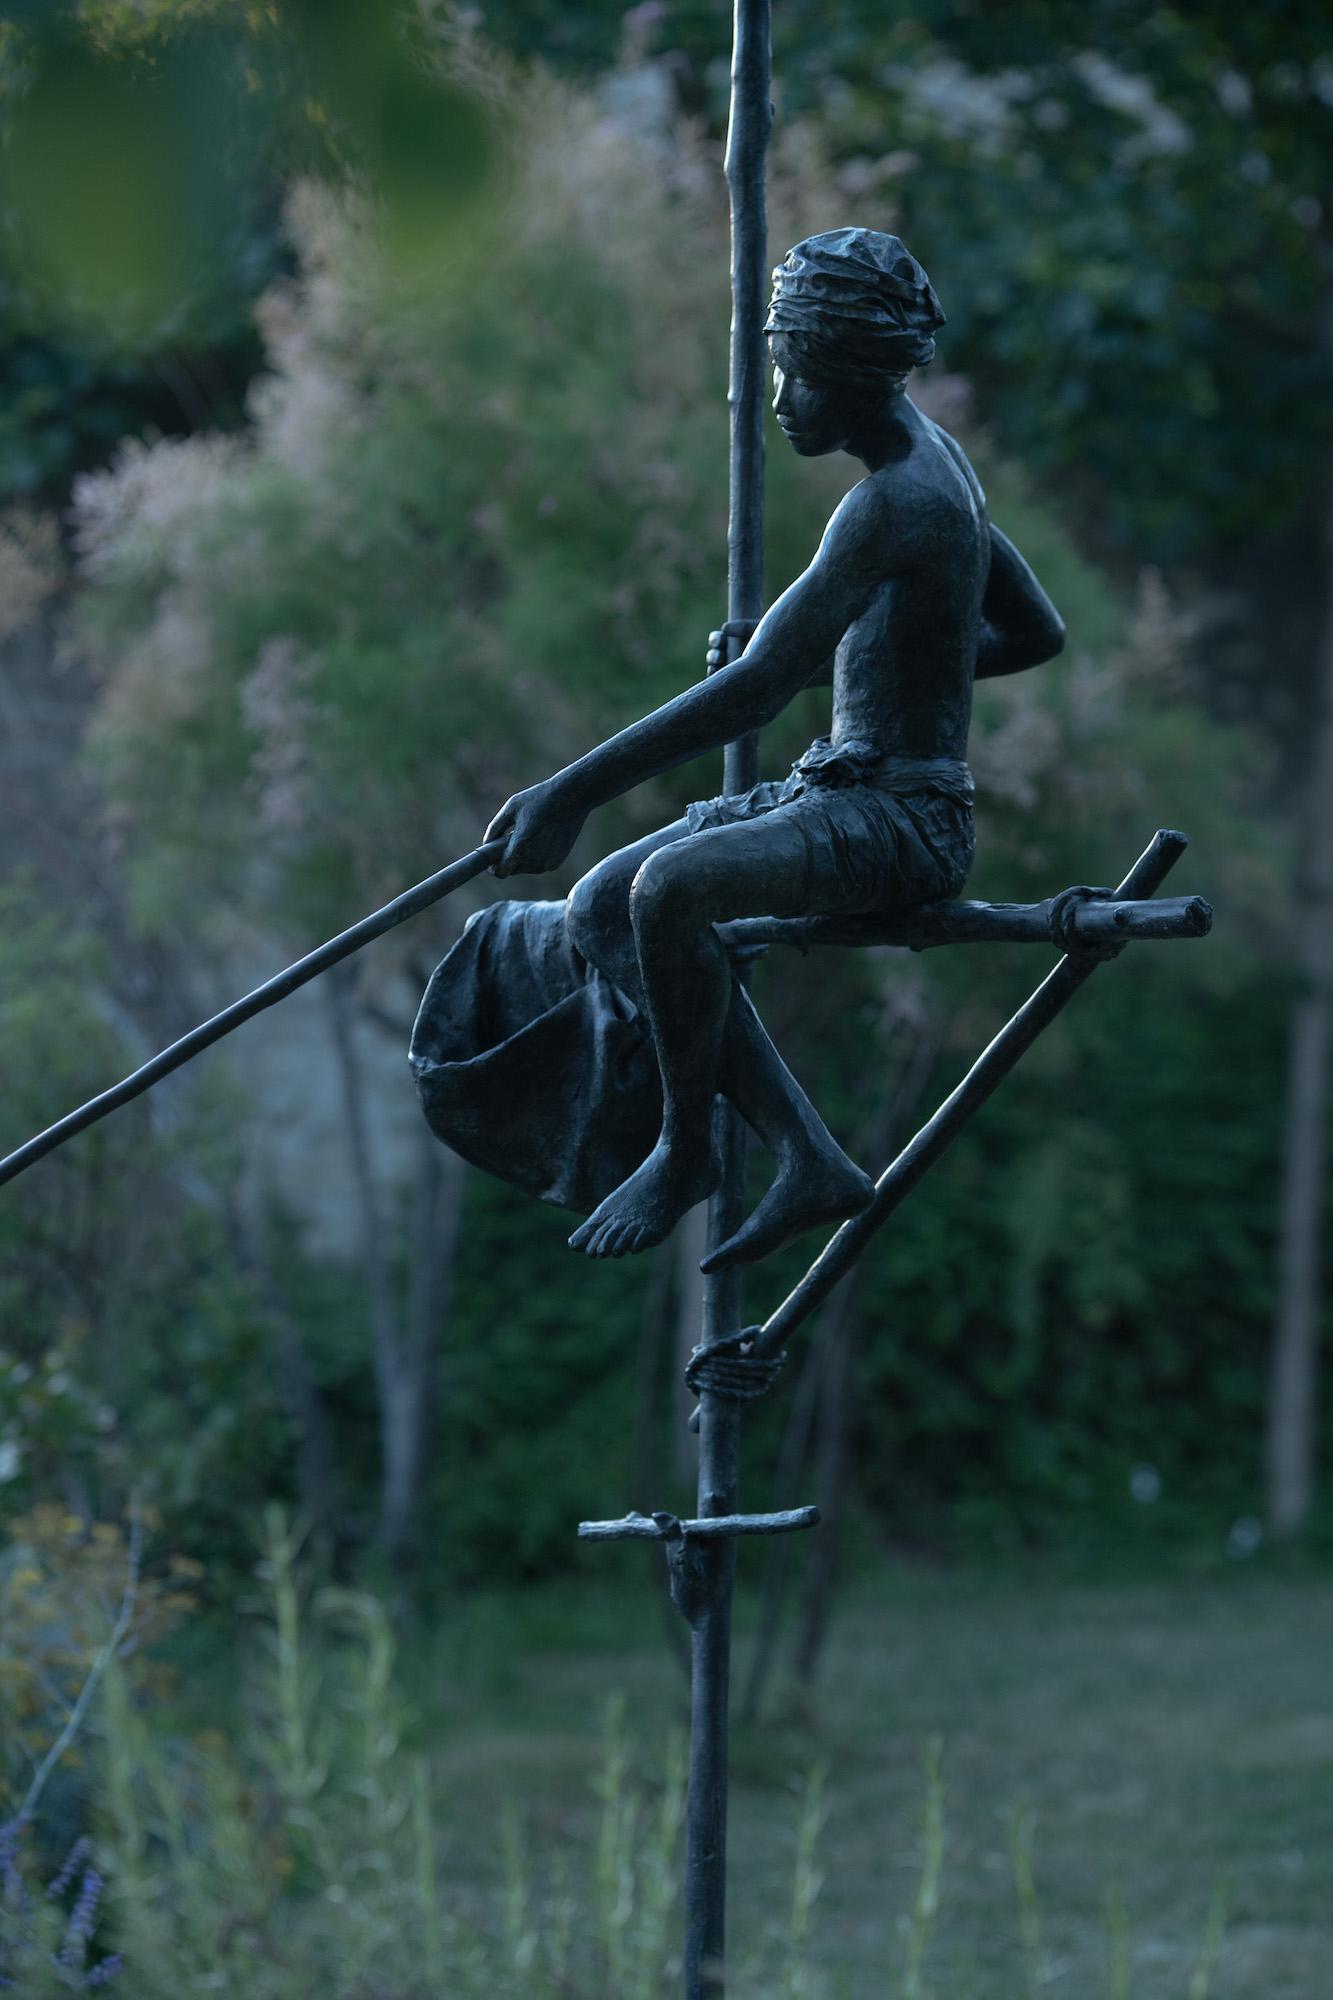 Pêcheur sur échasses est une sculpture à grande échelle de l'artiste contemporaine française Marine de Soos.  Bronze, 253 cm × 126 cm × 175 cm.
Chacune des sculptures de Marine de Soos a son histoire, étant le souvenir d'un moment réel ou d'une